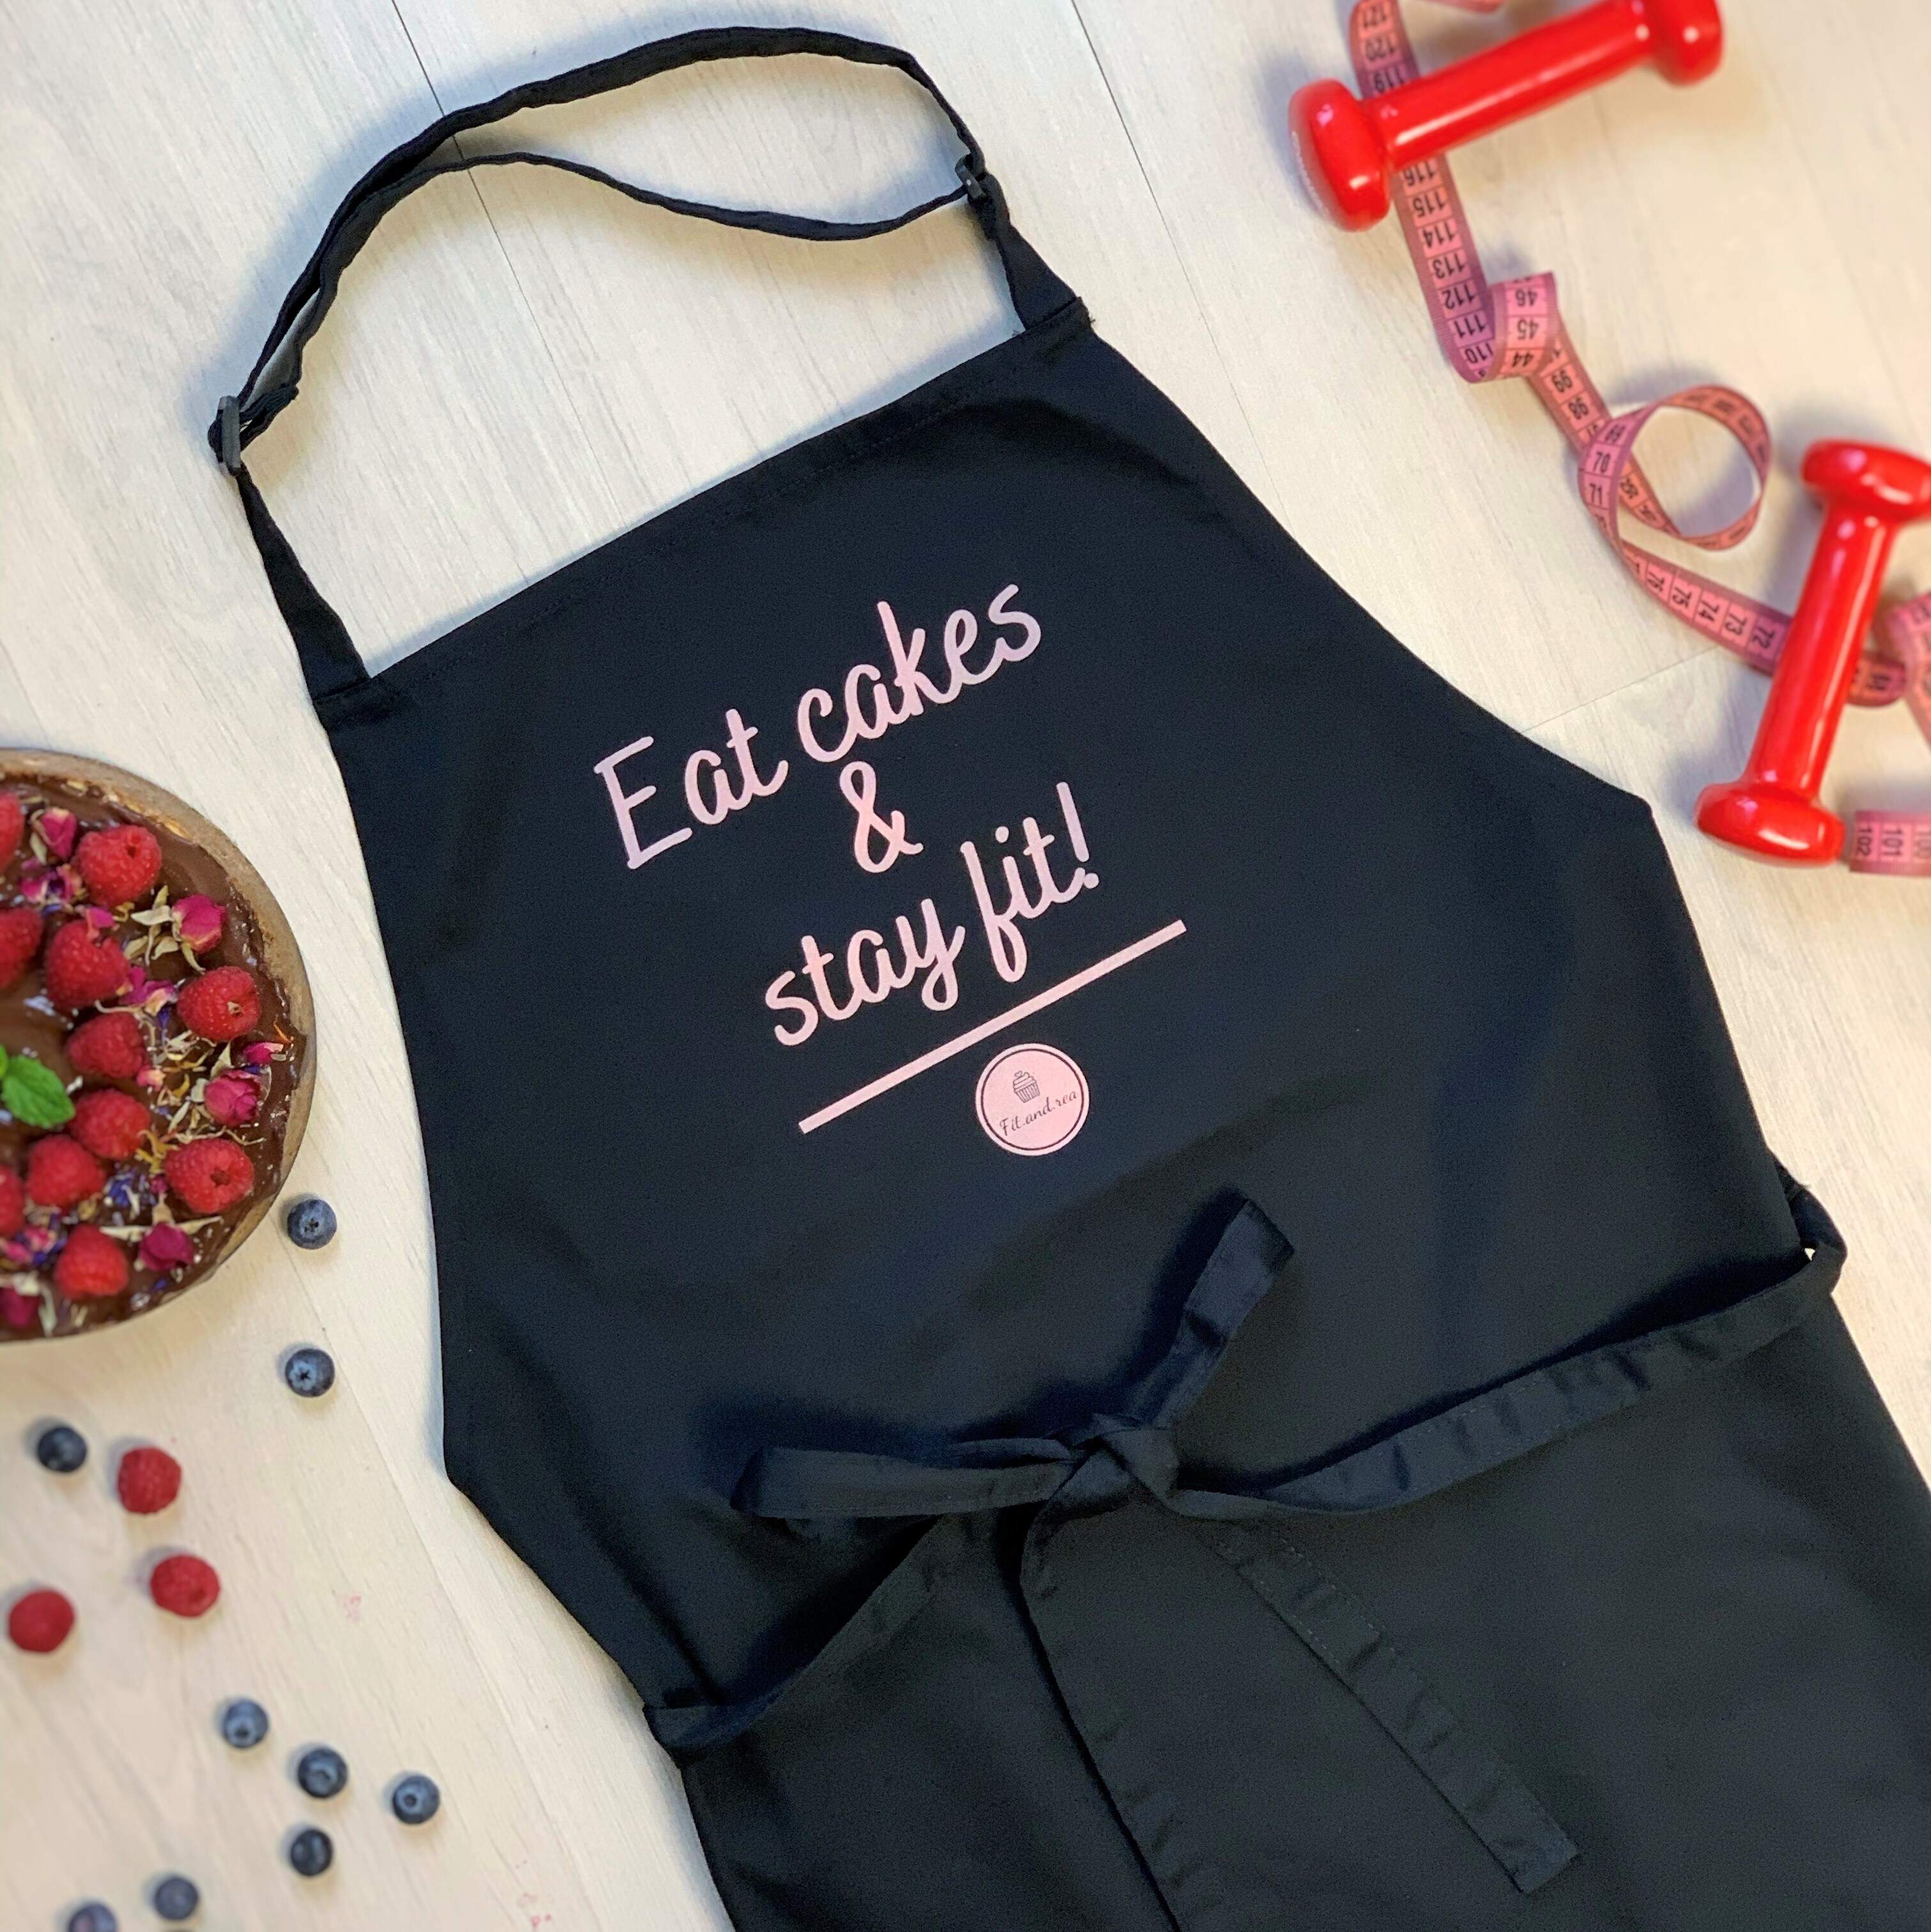 Zástera - Eat cakes & stay fit!